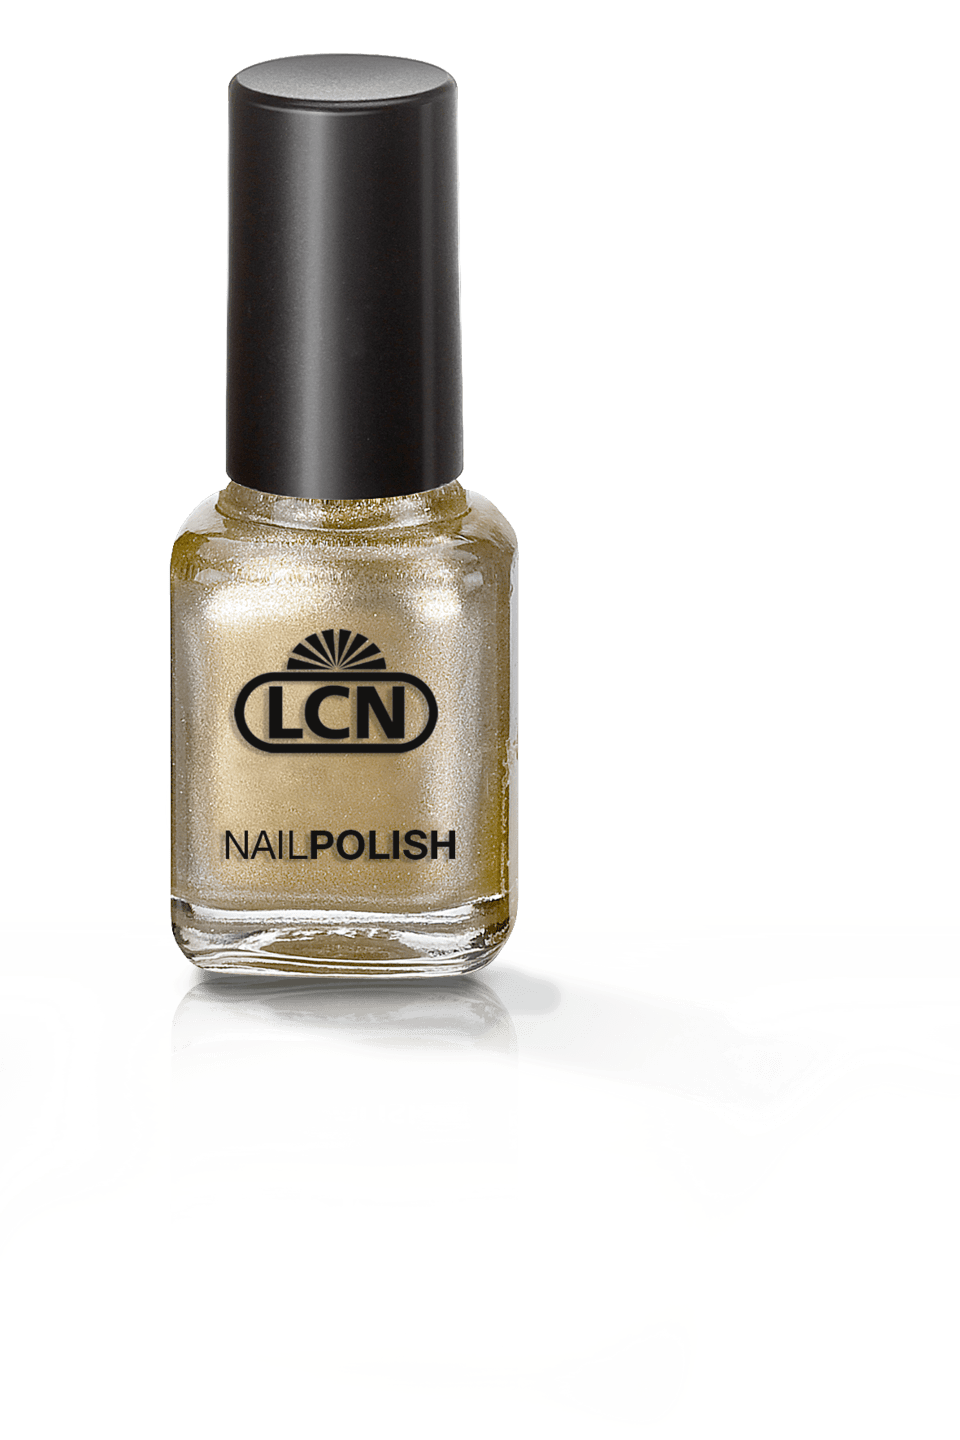 LCN - Nagellack, 8 ml in gold rush (G17)